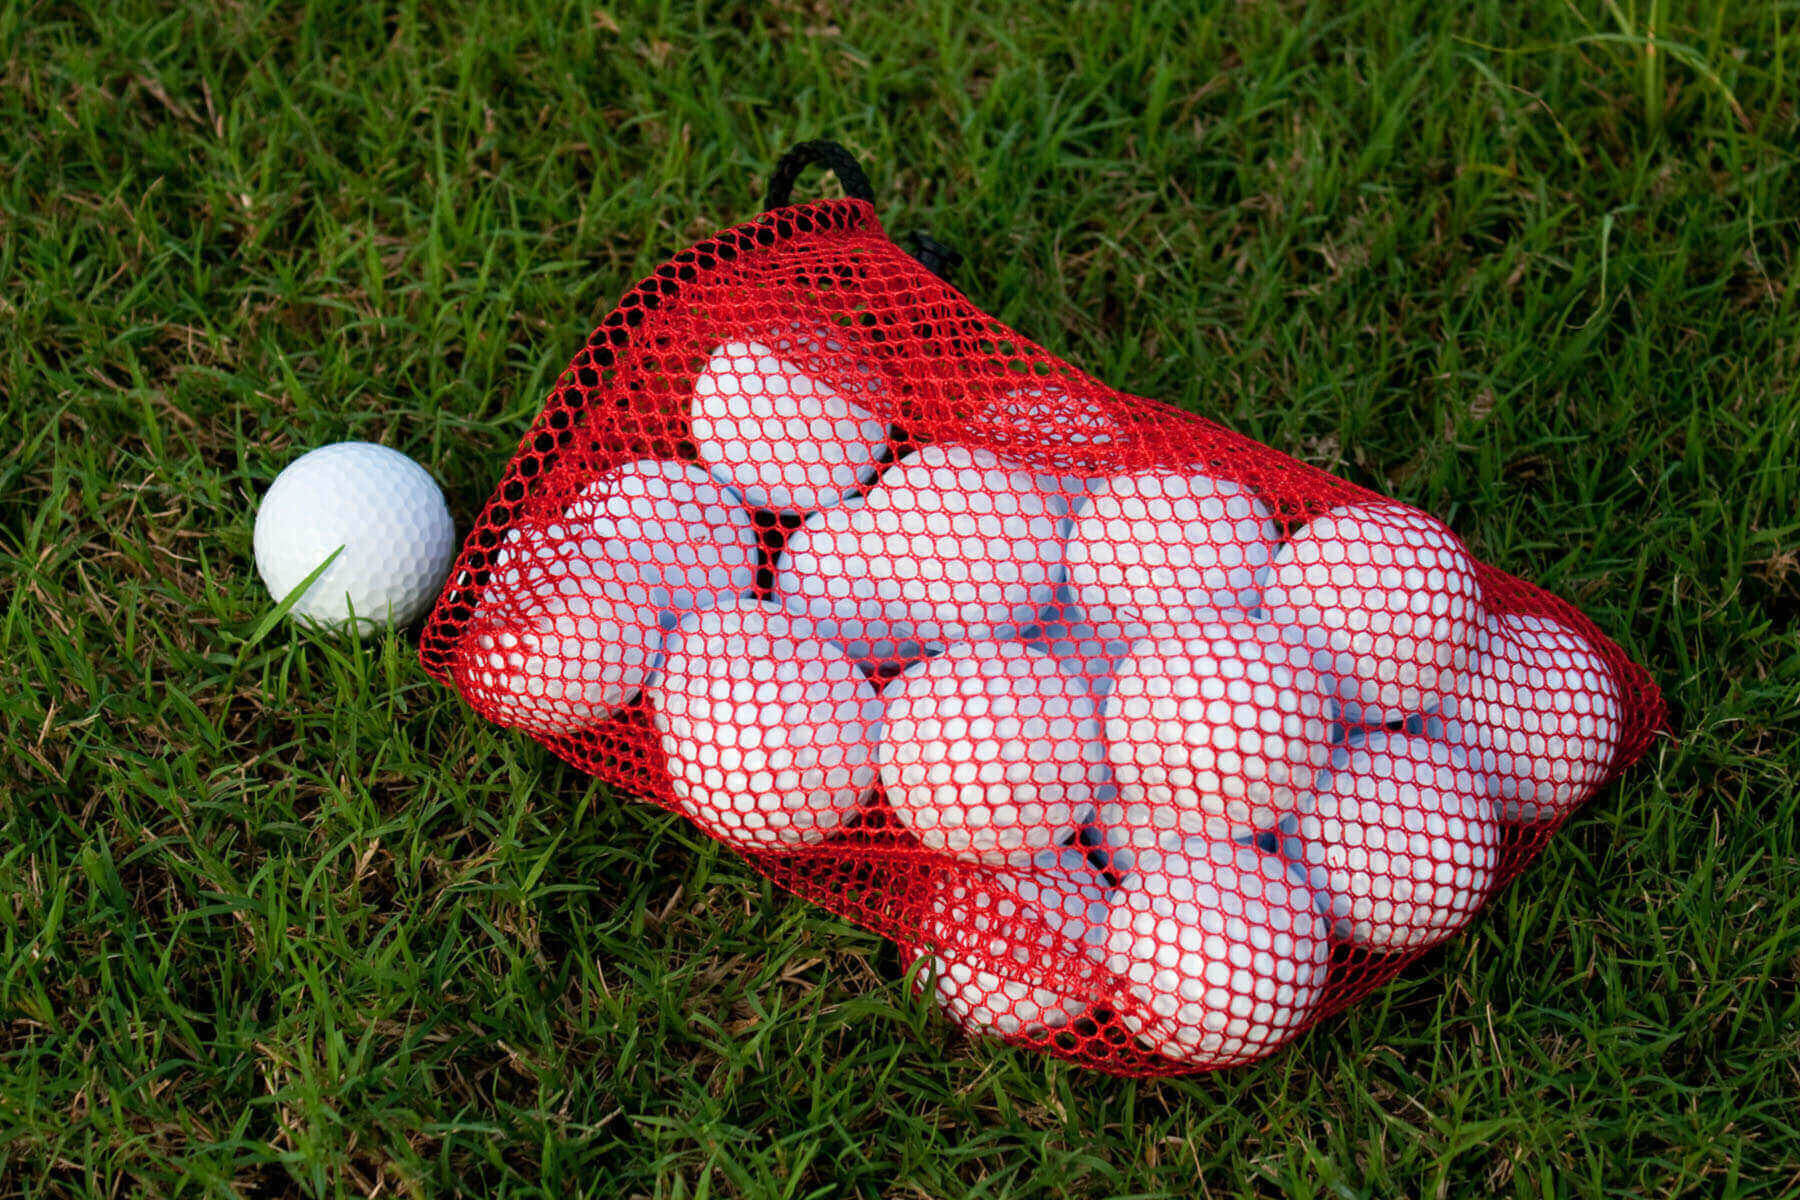 Golflabdák egy hálóban a fűben fekve